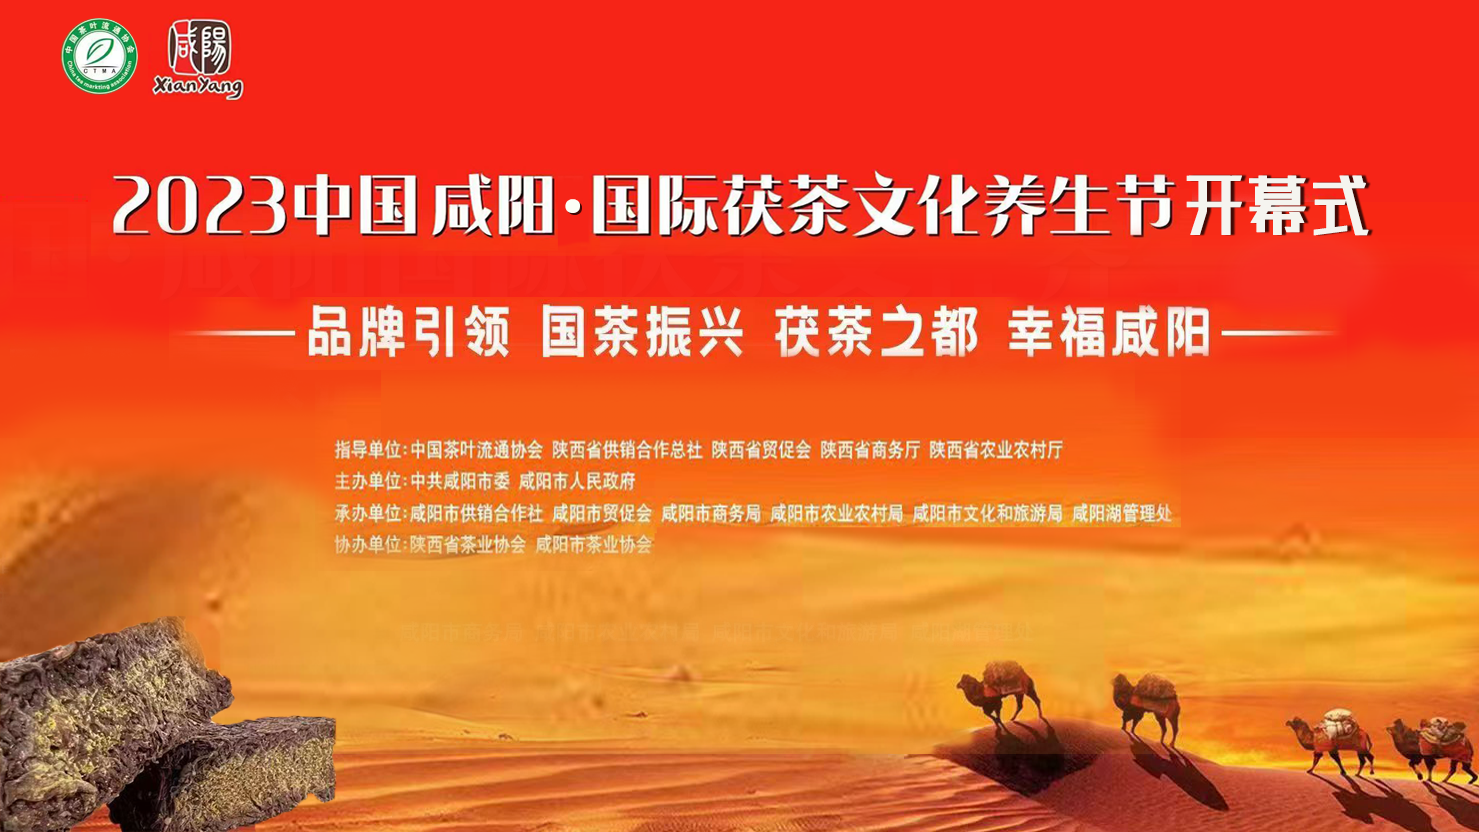 【直播回看】2023中國咸陽 · 國際茯茶文化養生節開幕式